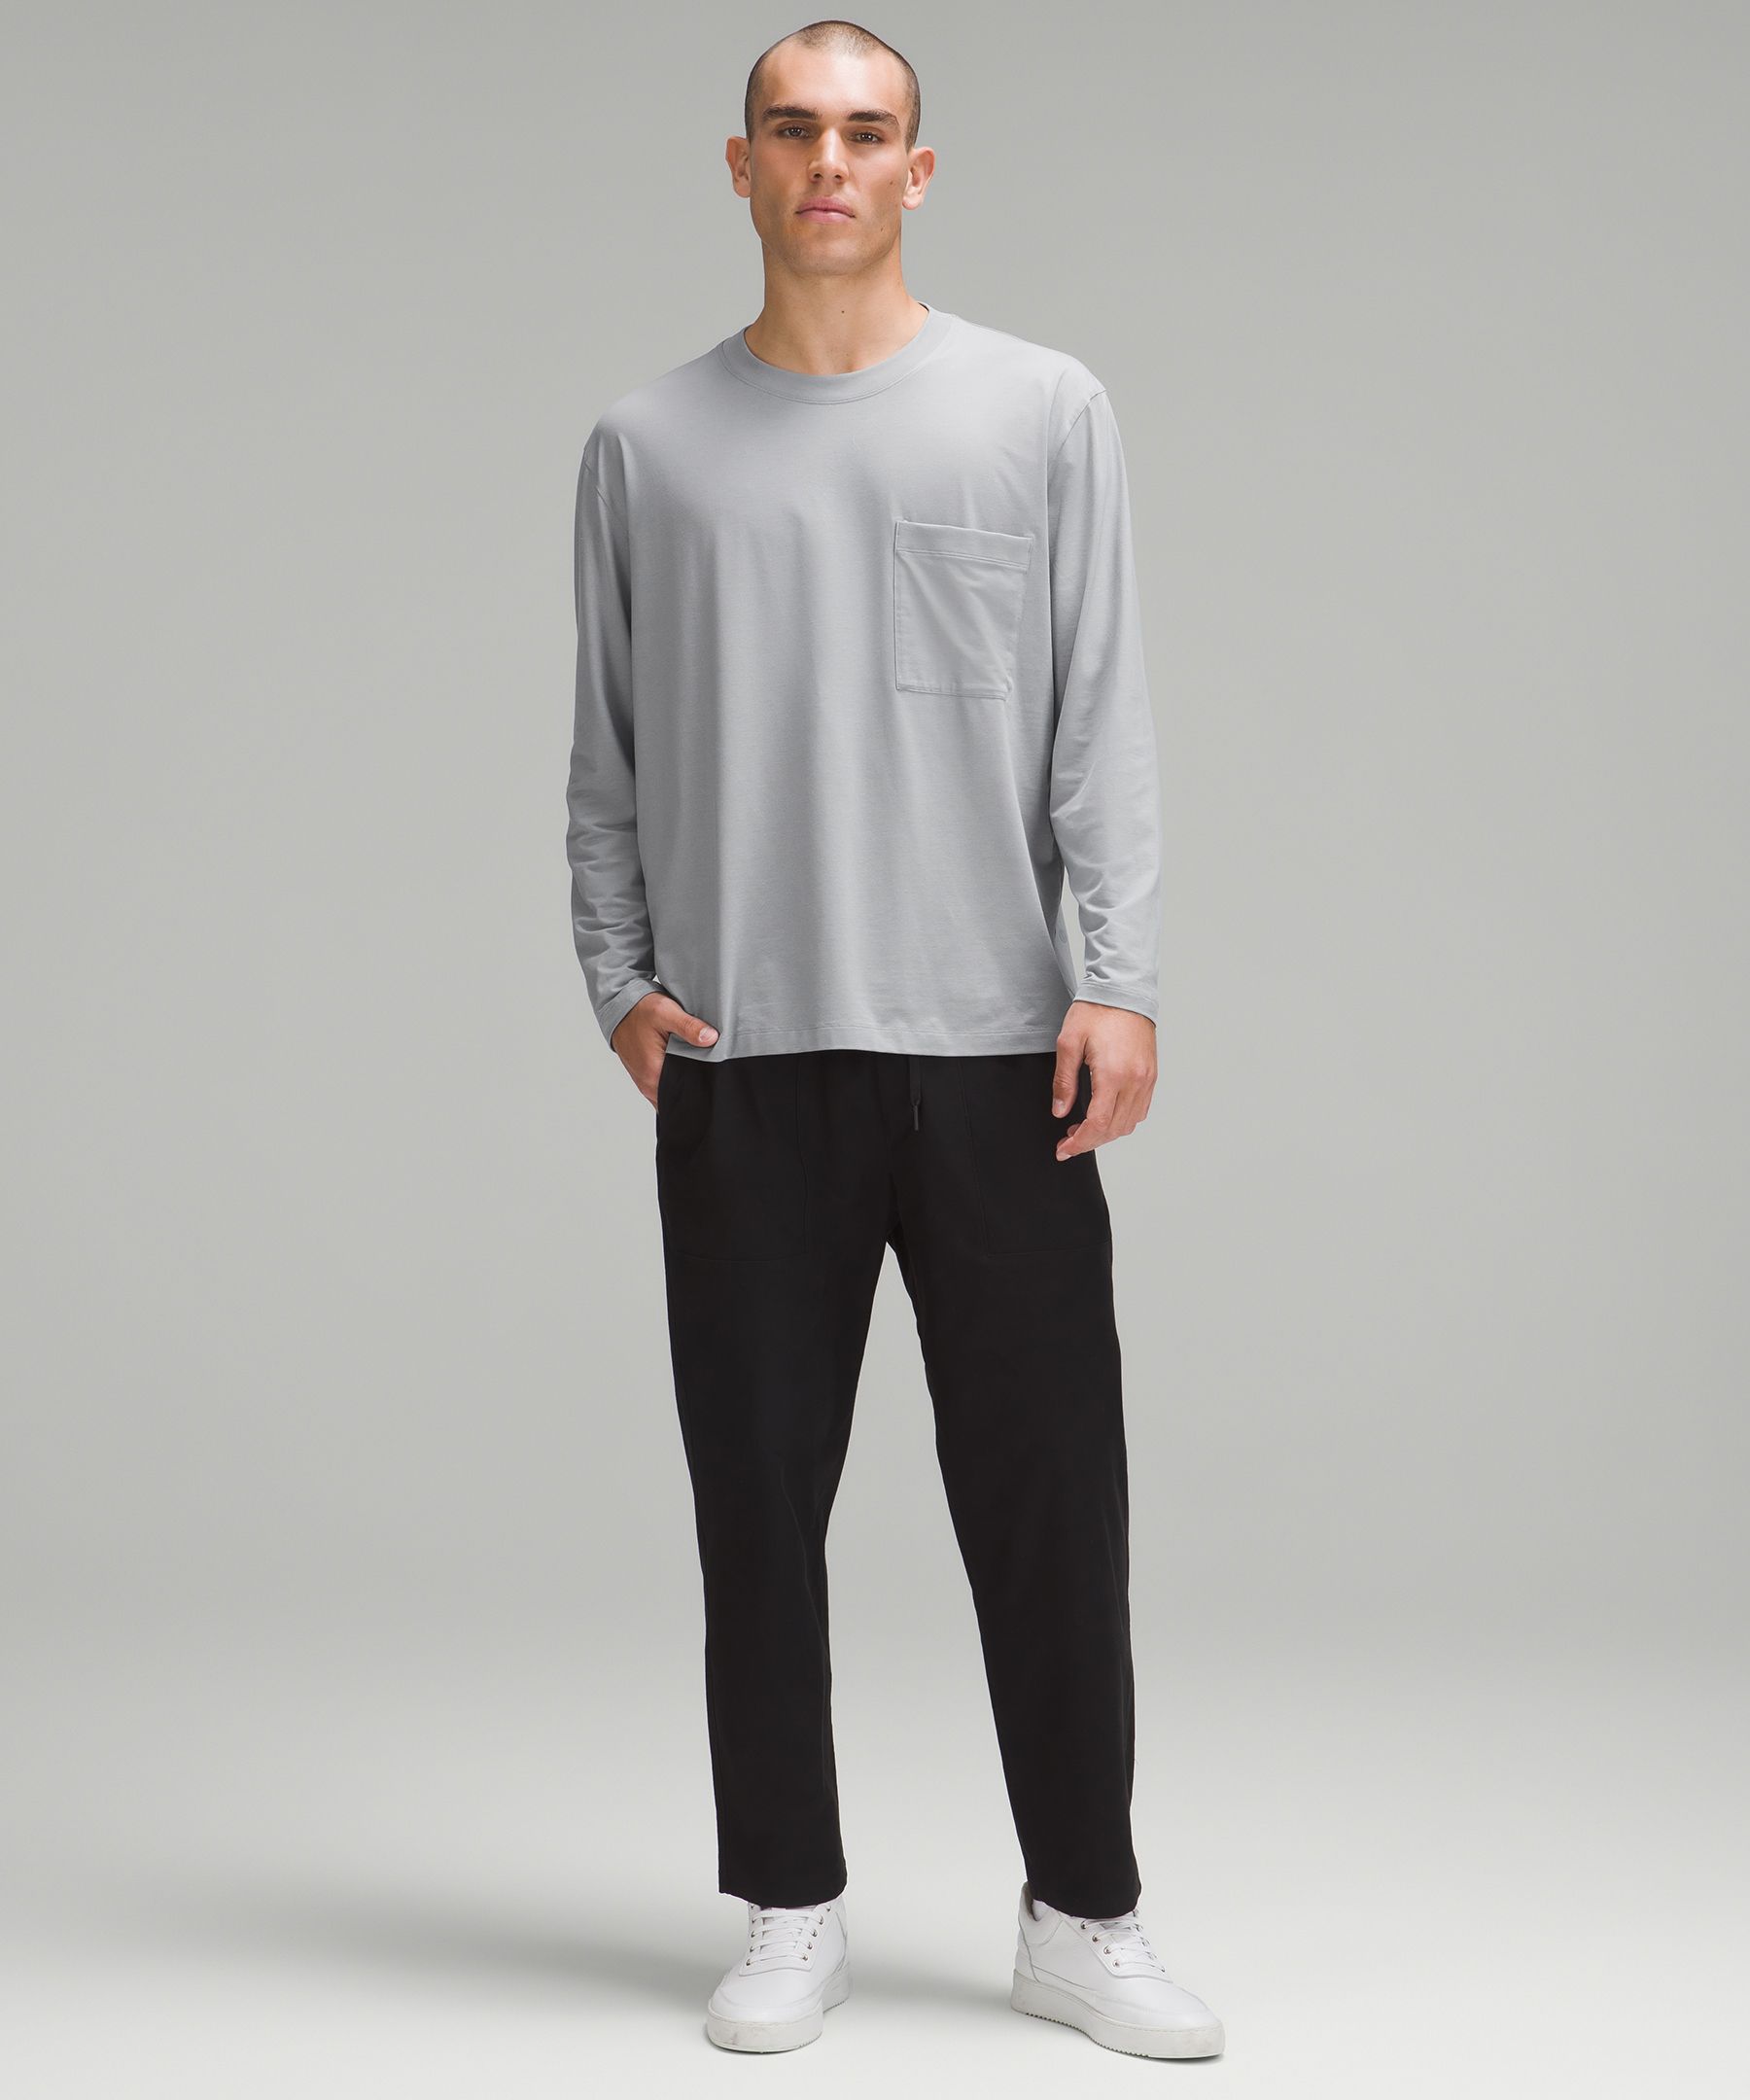 Lululemon Fundamental Long-Sleeve Shirt - White - Size Xs